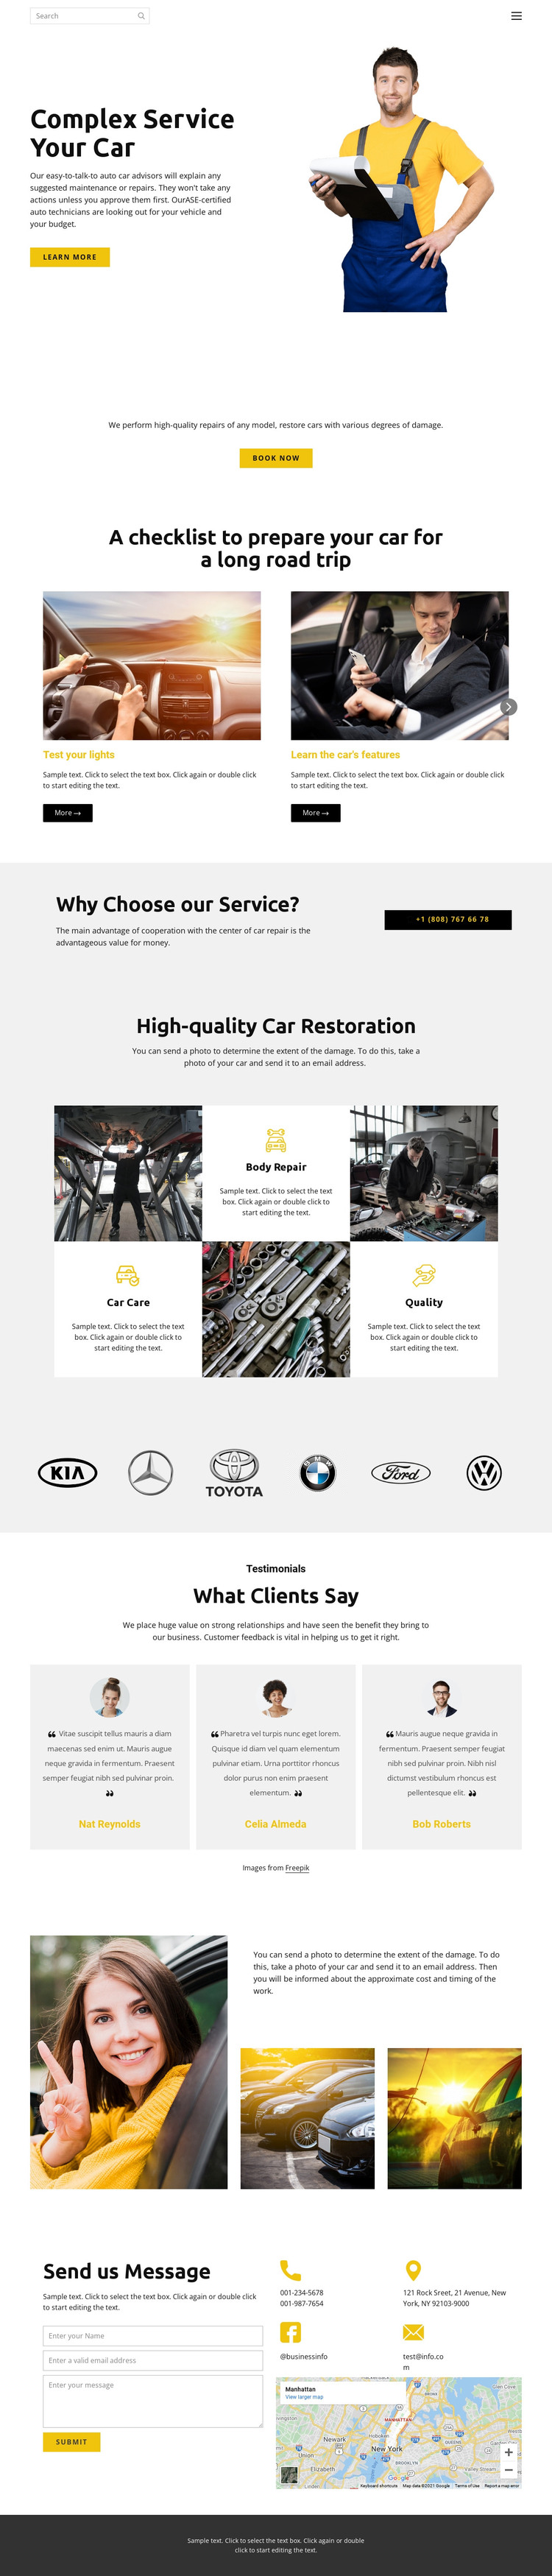 Car service Web Design